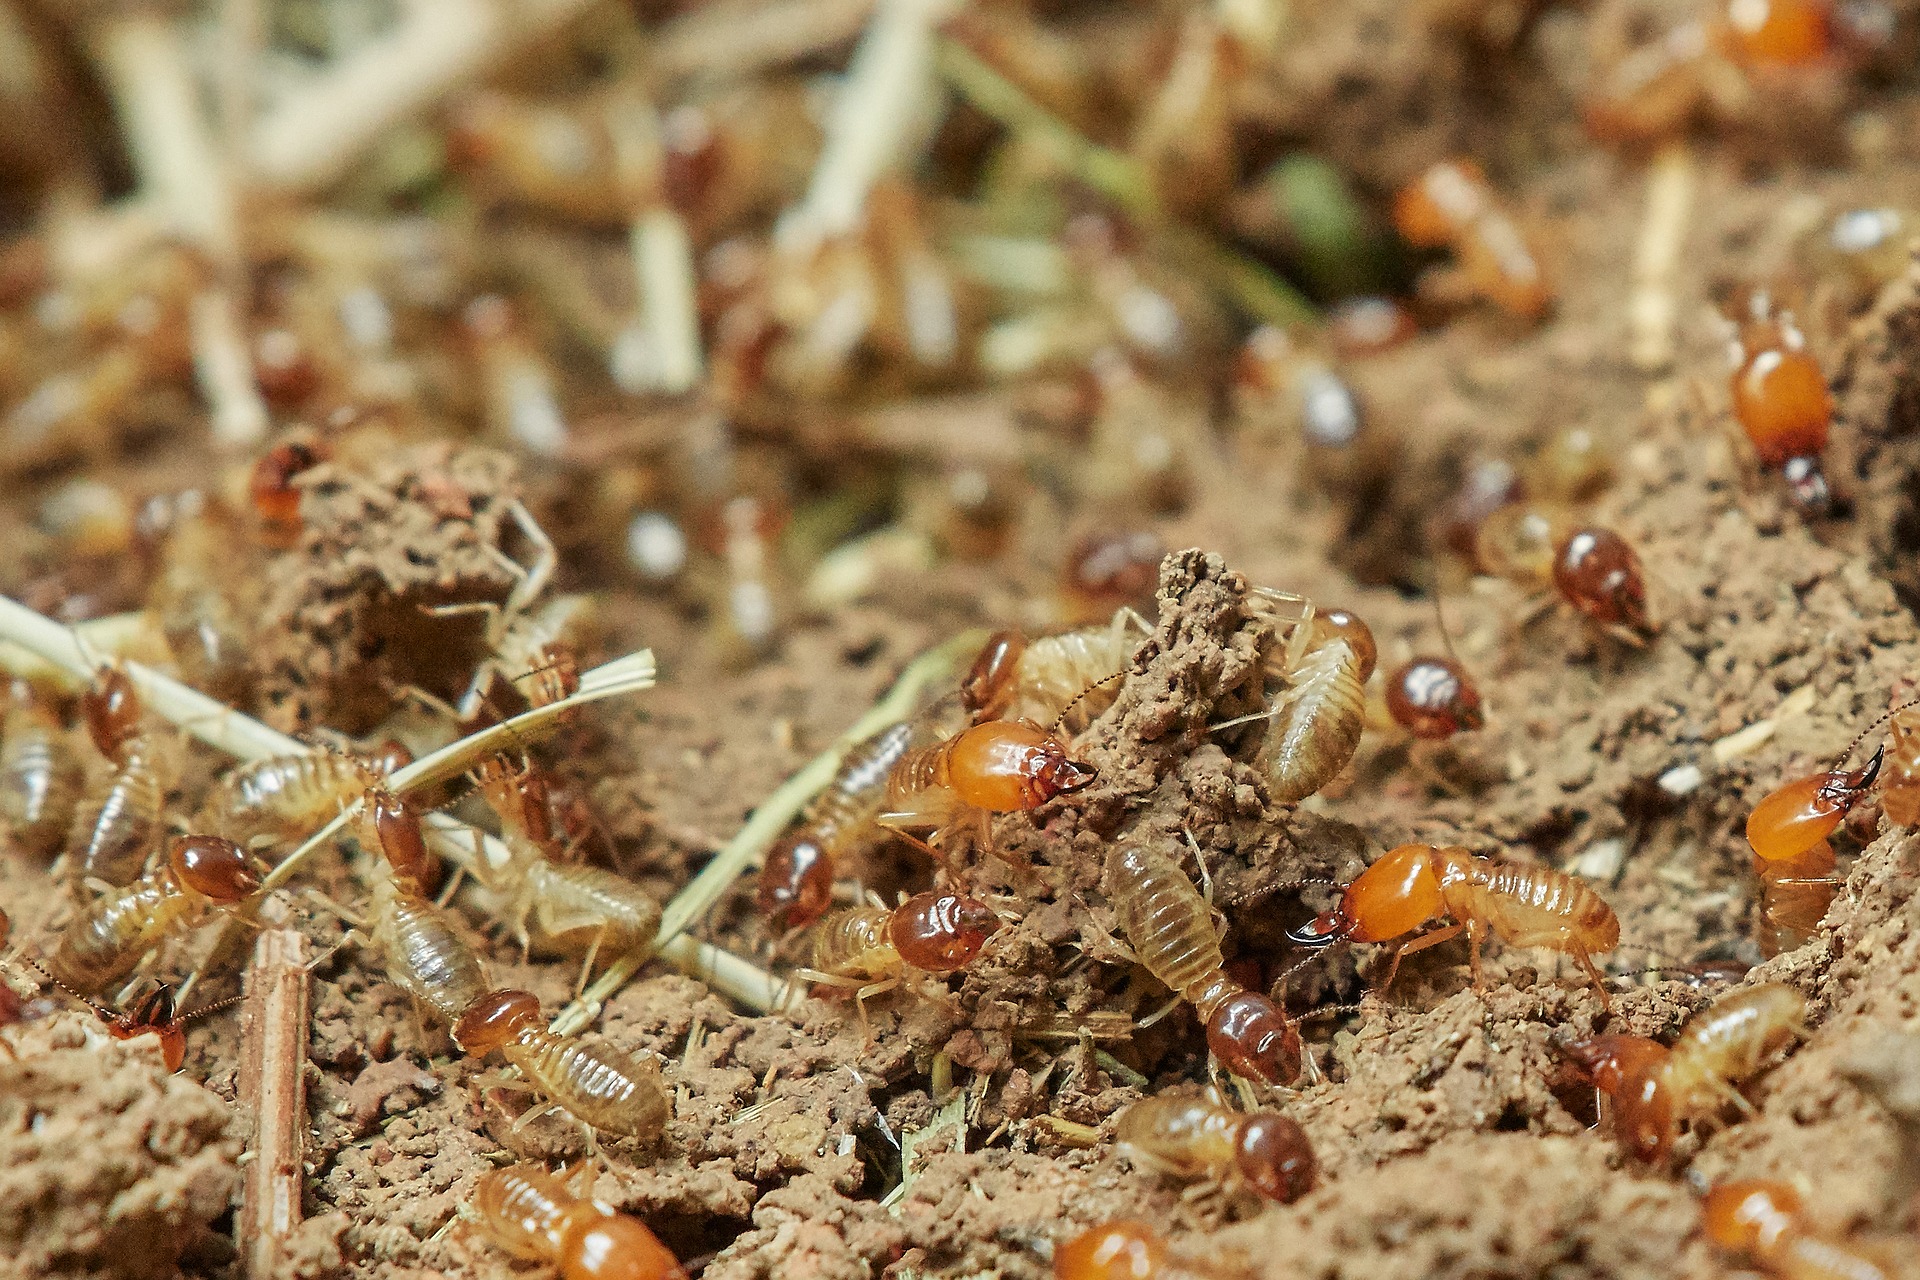 Eliminate Termites In Oregon Homes All Natural Pest Elimination